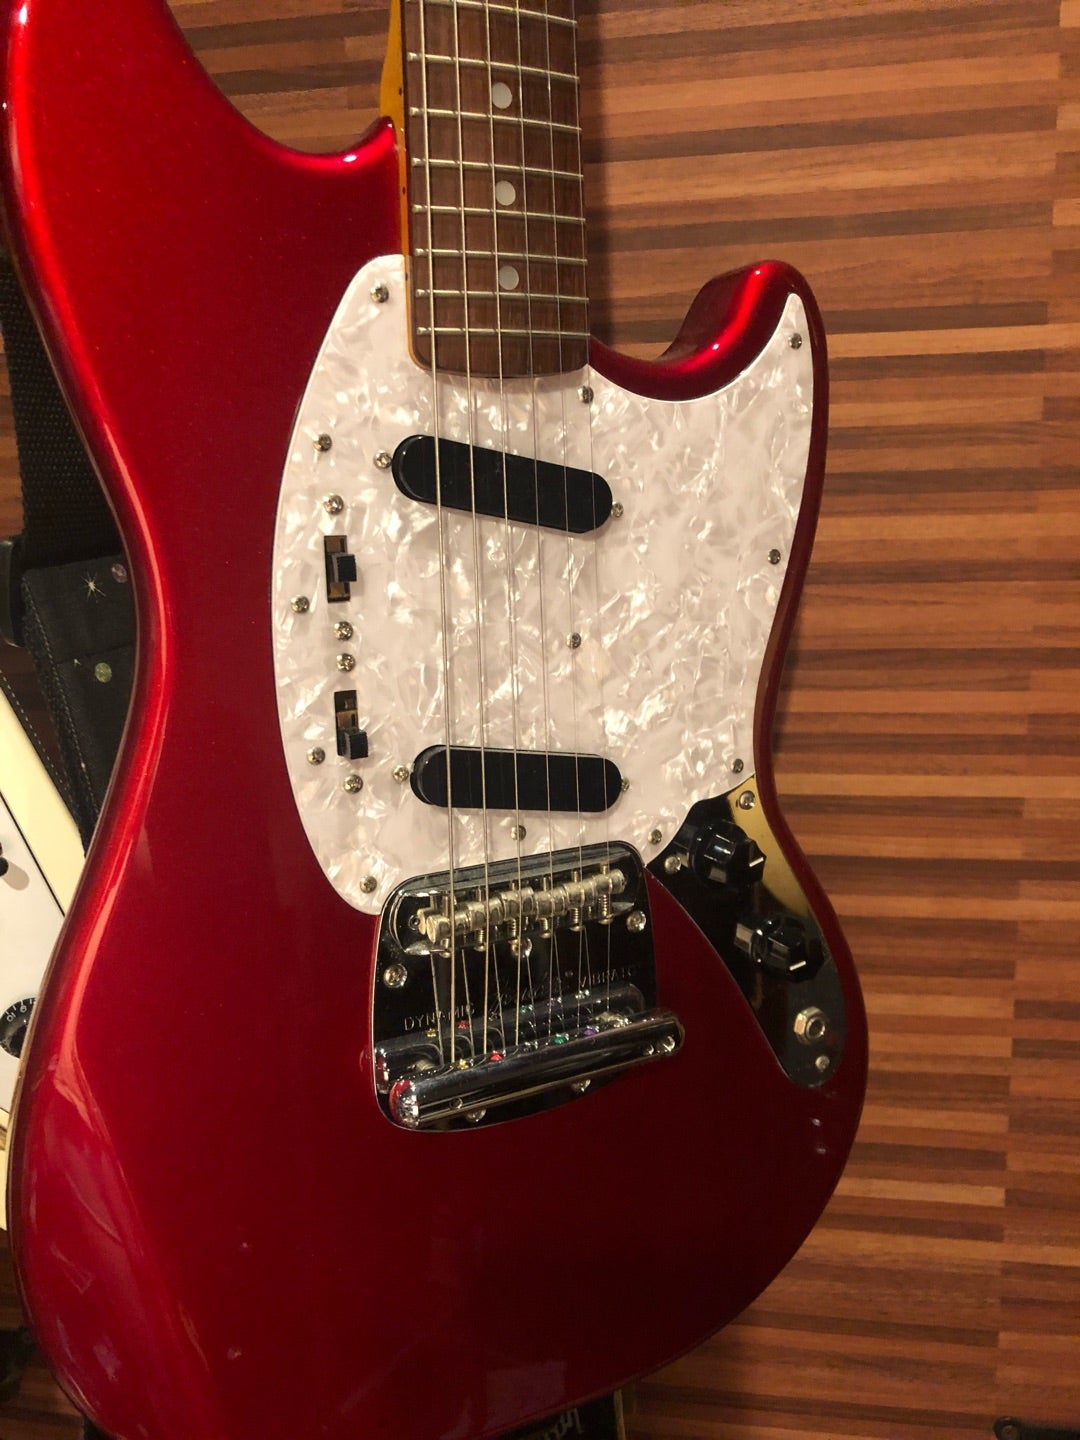 009 唐突なギター紹介 Fender Mustang けいおん 中野梓モデルの 